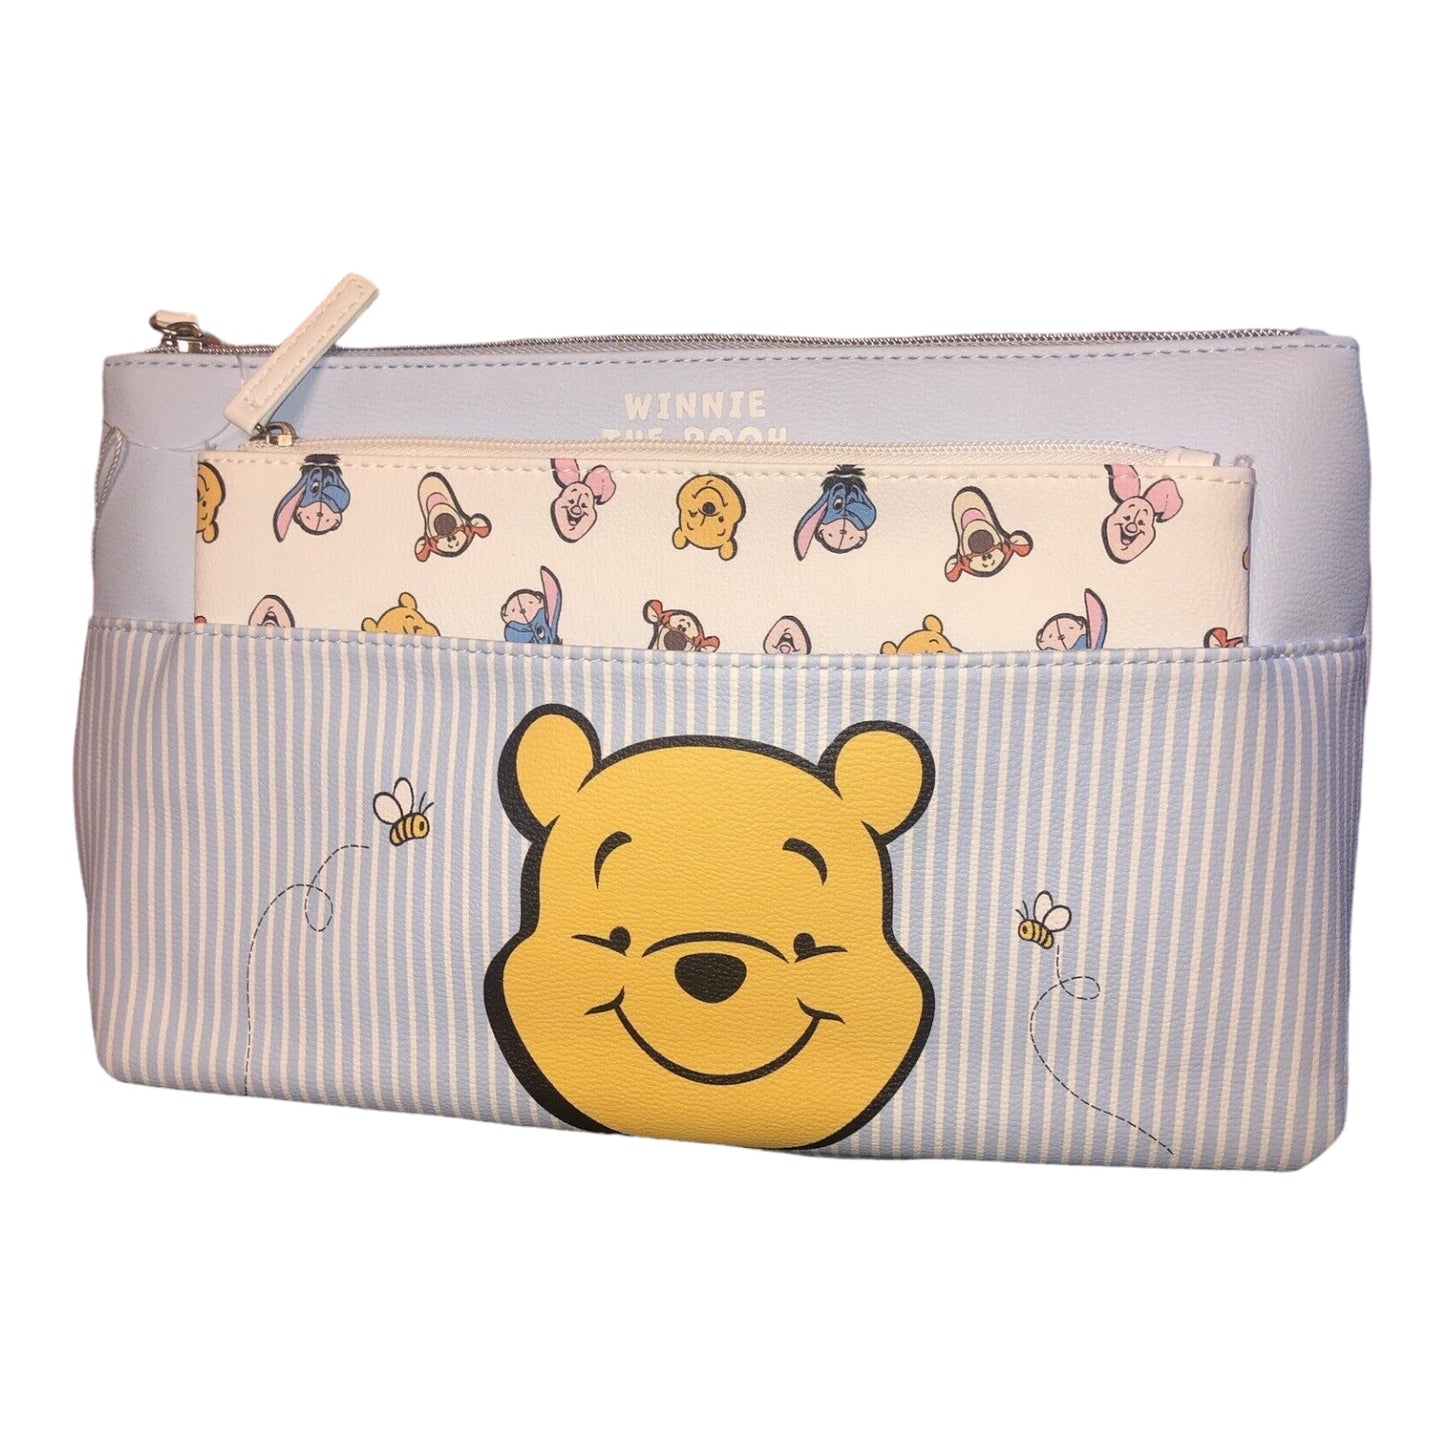 Winnie The Pooh 2 Piece Makeup Bag Set